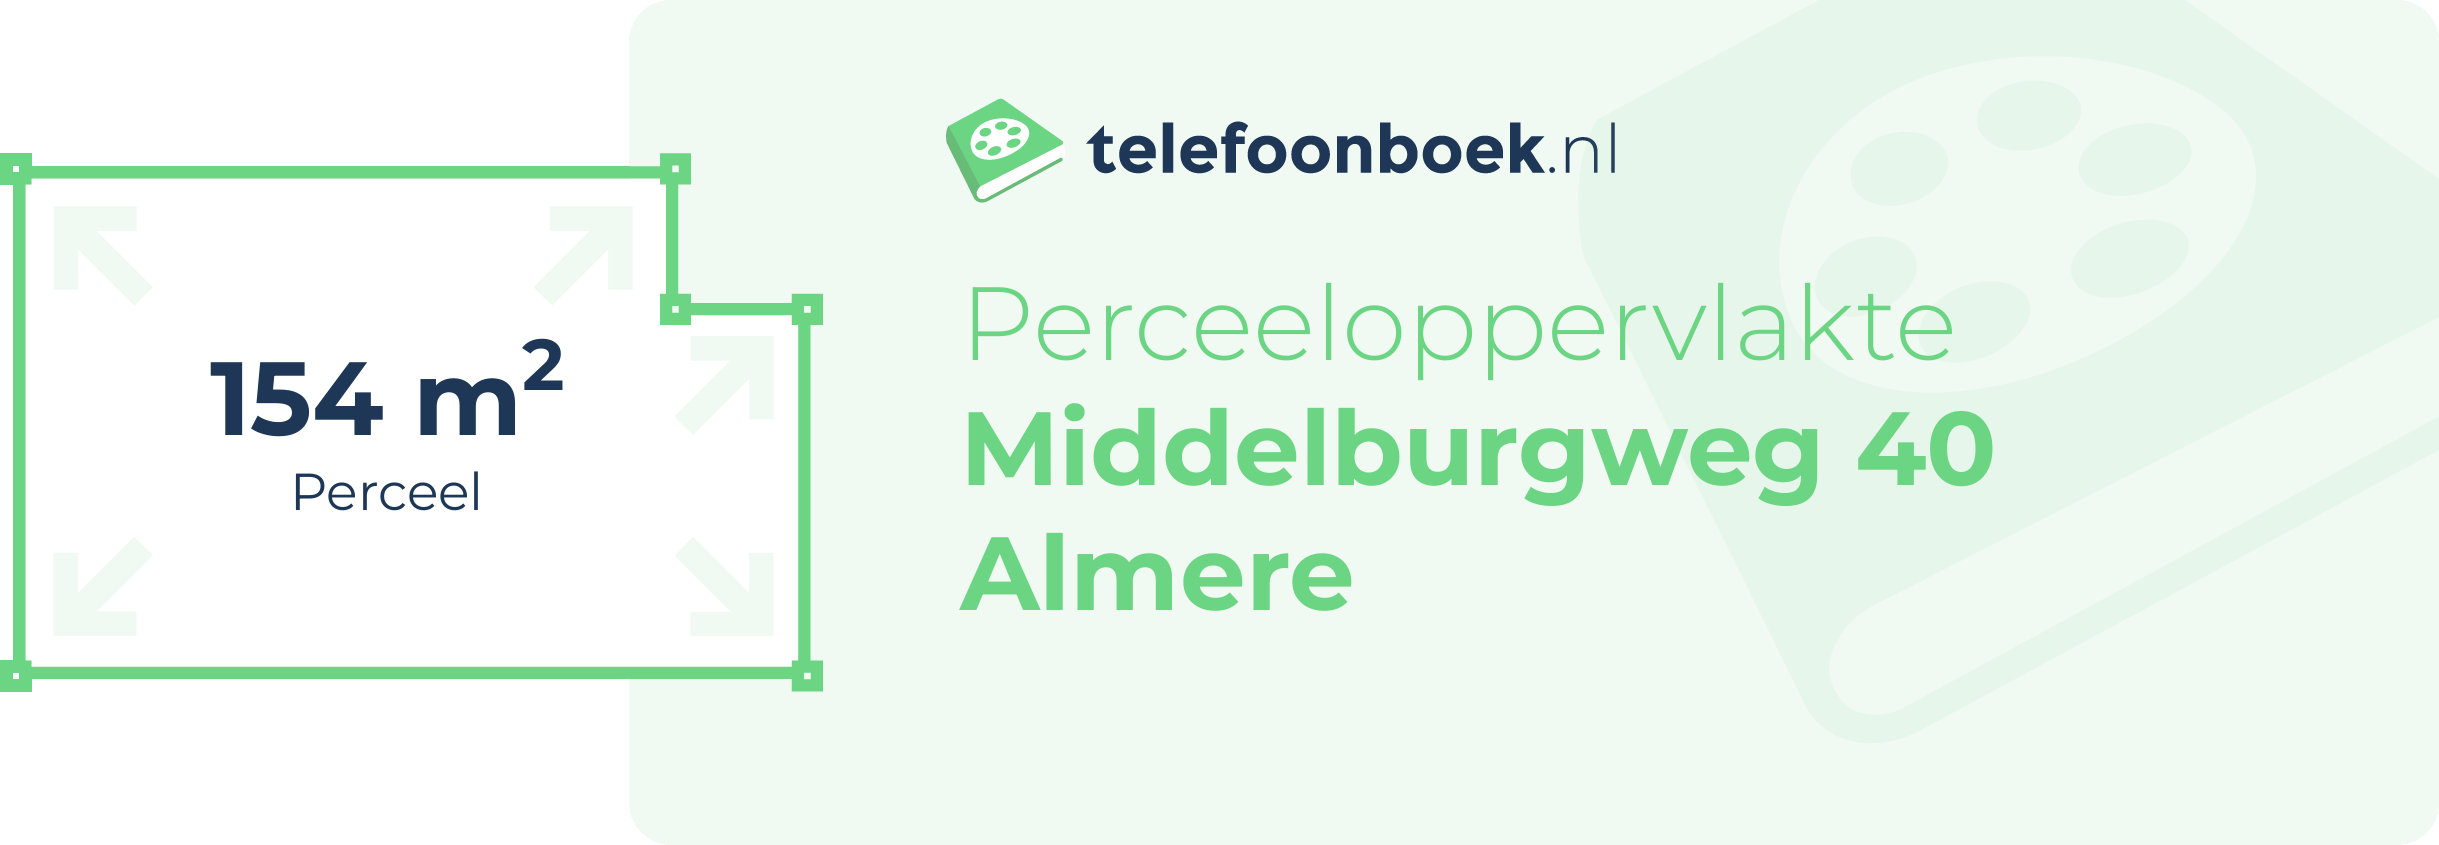 Perceeloppervlakte Middelburgweg 40 Almere